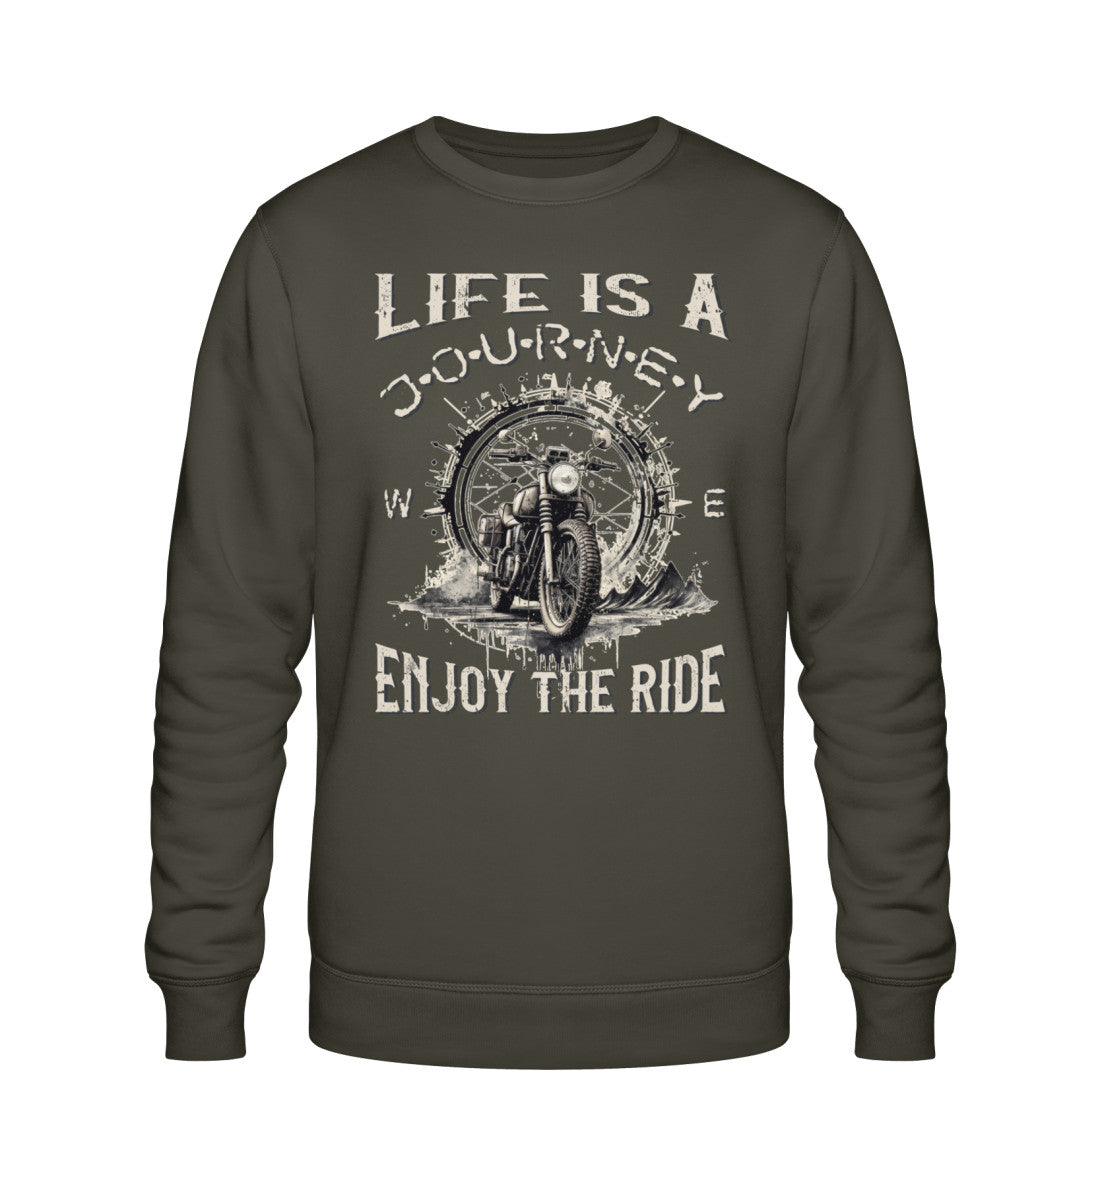 Ein Biker Sweatshirt für Motorradfahrer von Wingbikers mit dem Aufdruck, Life Is A Journey - Enjoy The Ride - in khaki grün.